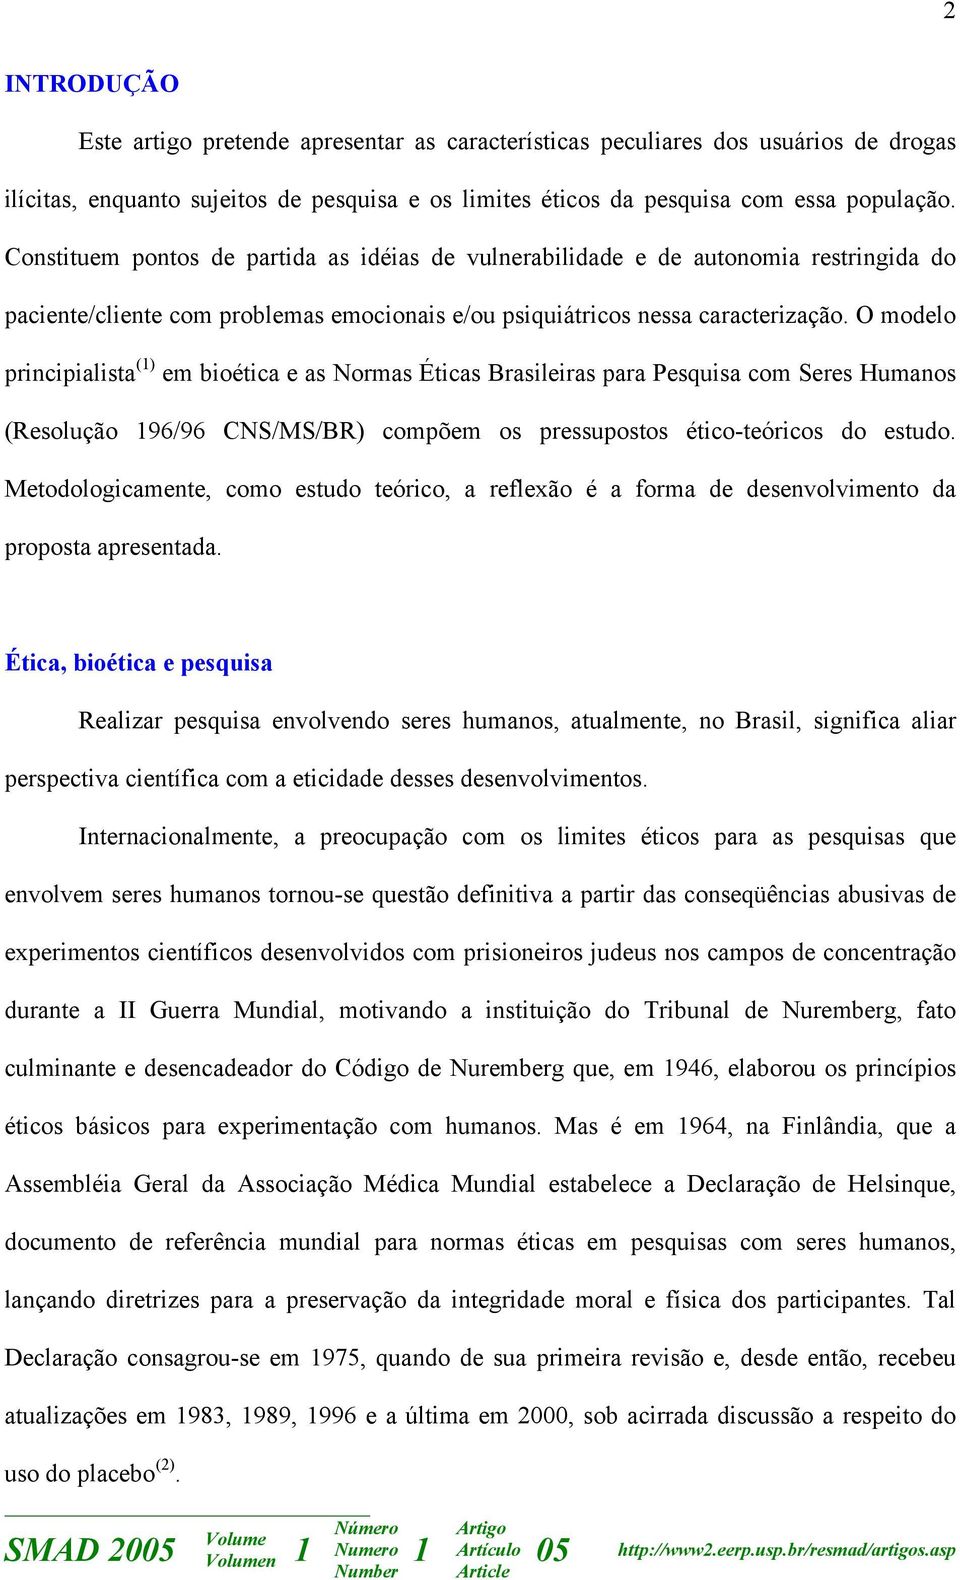 O modelo principialista () em bioética e as Normas Éticas Brasileiras para Pesquisa com Seres Humanos (Resolução 96/96 CNS/MS/BR) compõem os pressupostos ético-teóricos do estudo.